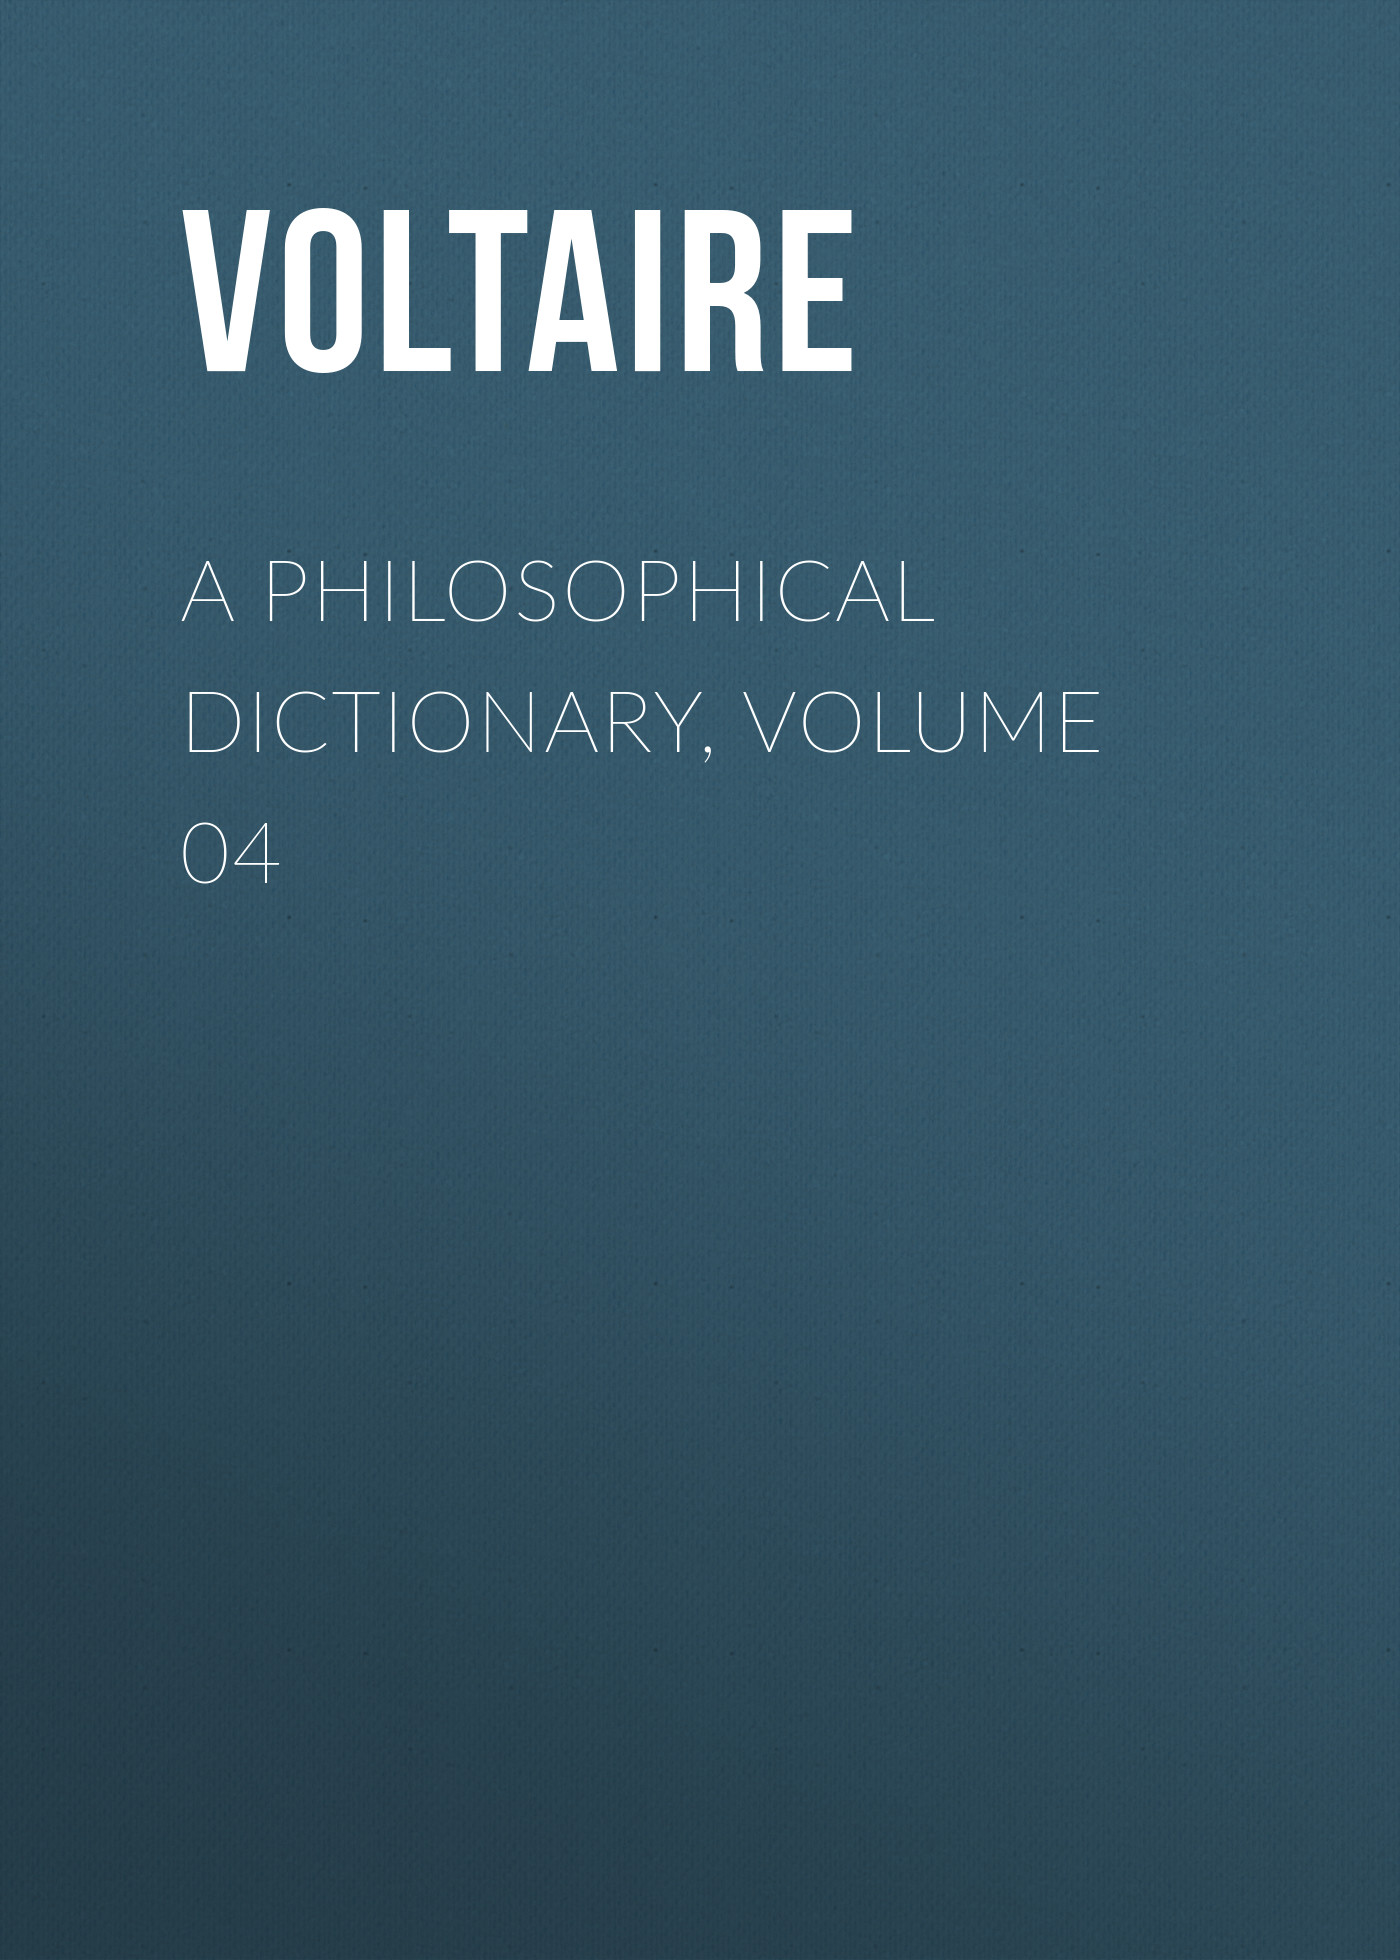 Книга A Philosophical Dictionary, Volume 04 из серии , созданная  Voltaire, может относится к жанру Философия, Литература 18 века, Зарубежная классика. Стоимость электронной книги A Philosophical Dictionary, Volume 04 с идентификатором 25560836 составляет 0 руб.